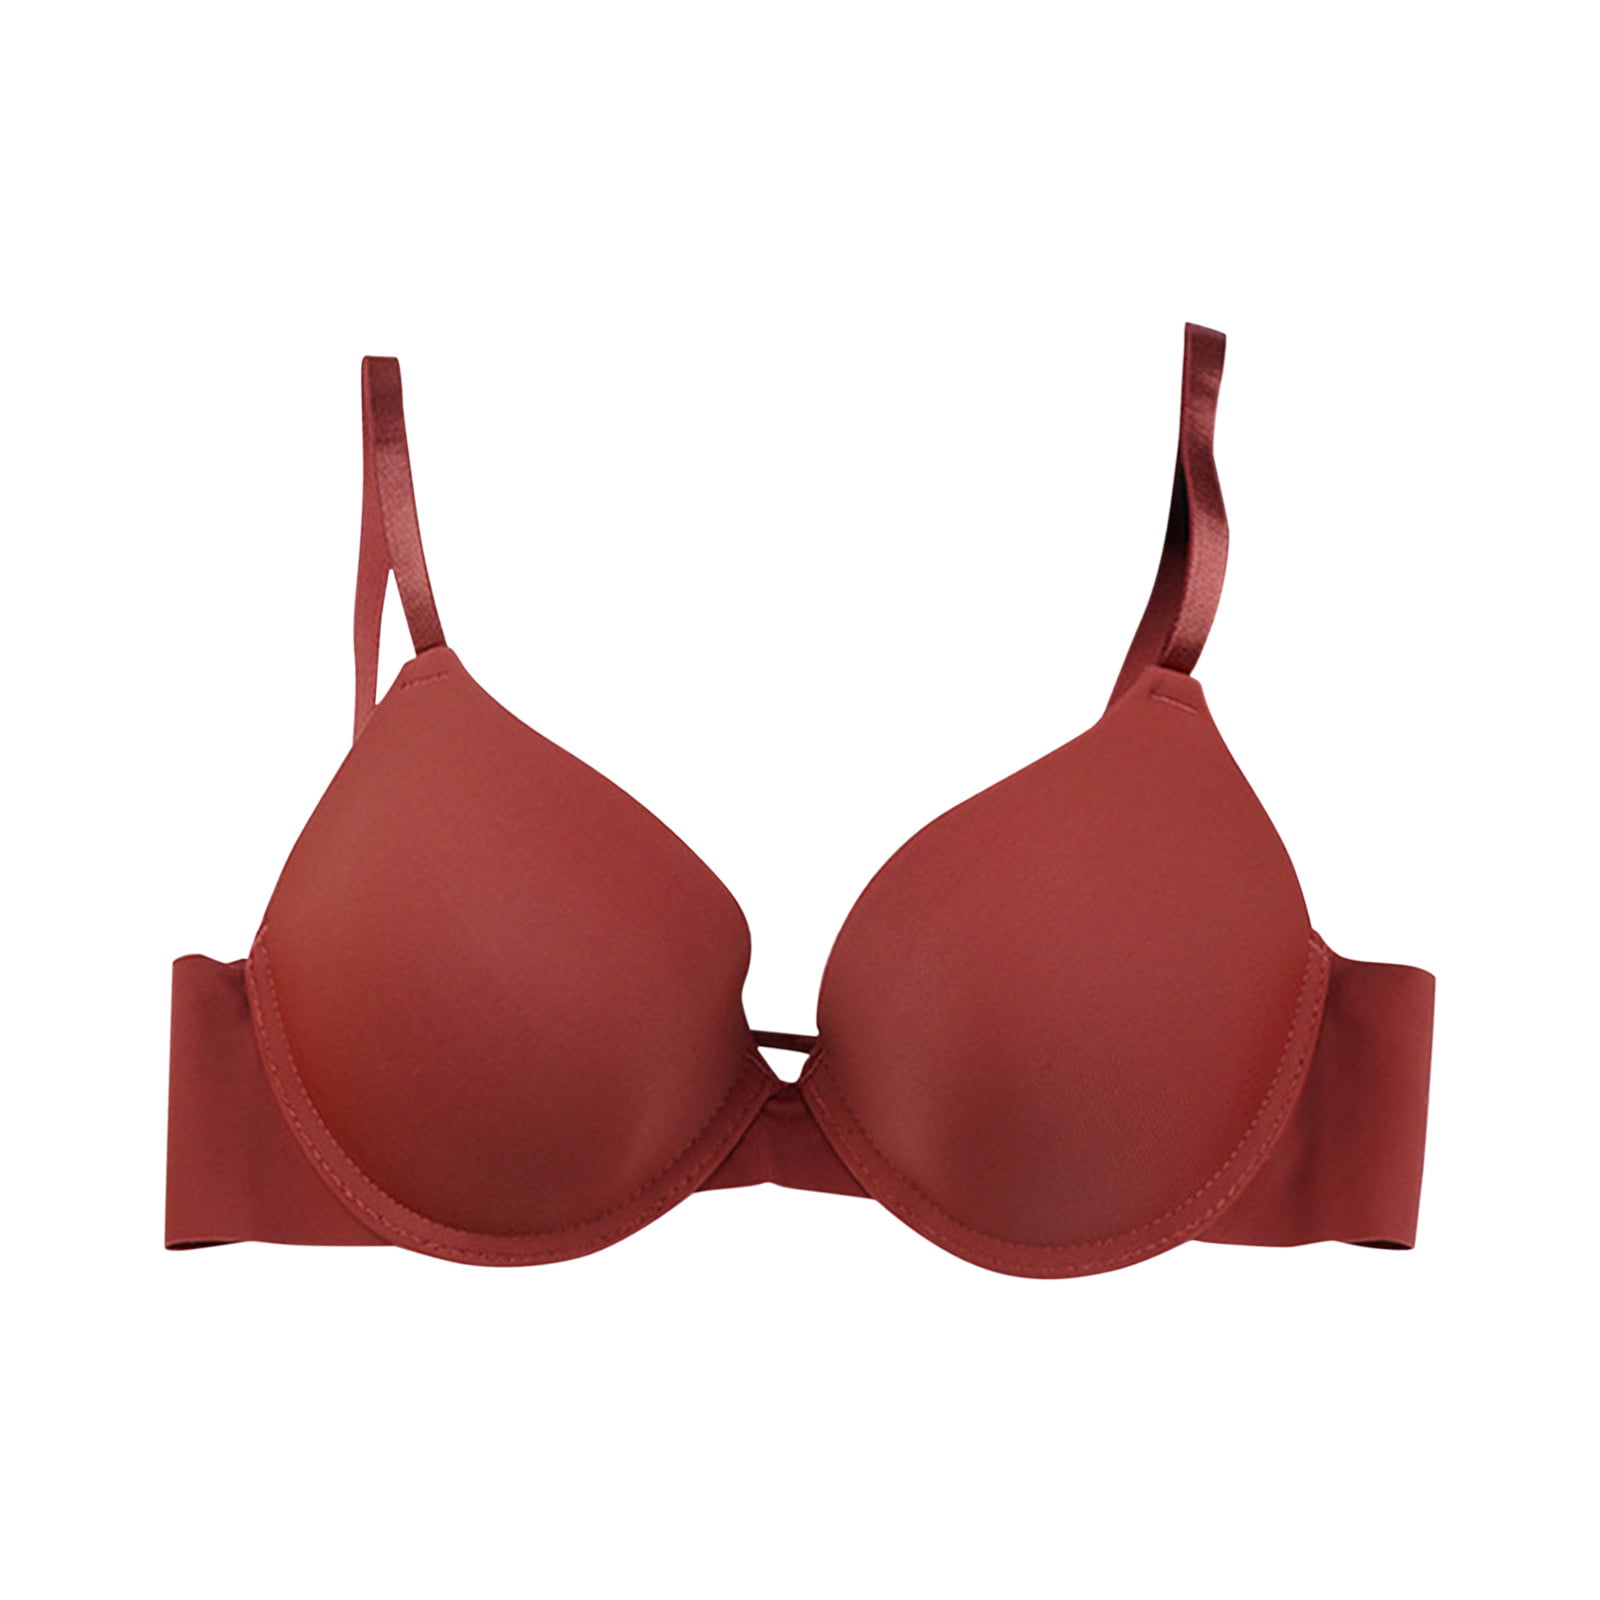 CAICJ98 Plus Size Lingerie Woman Lace Thin Underwear Female Transparent Bras  for Women Lace Lingerie Bralette for Ladies Red,M 